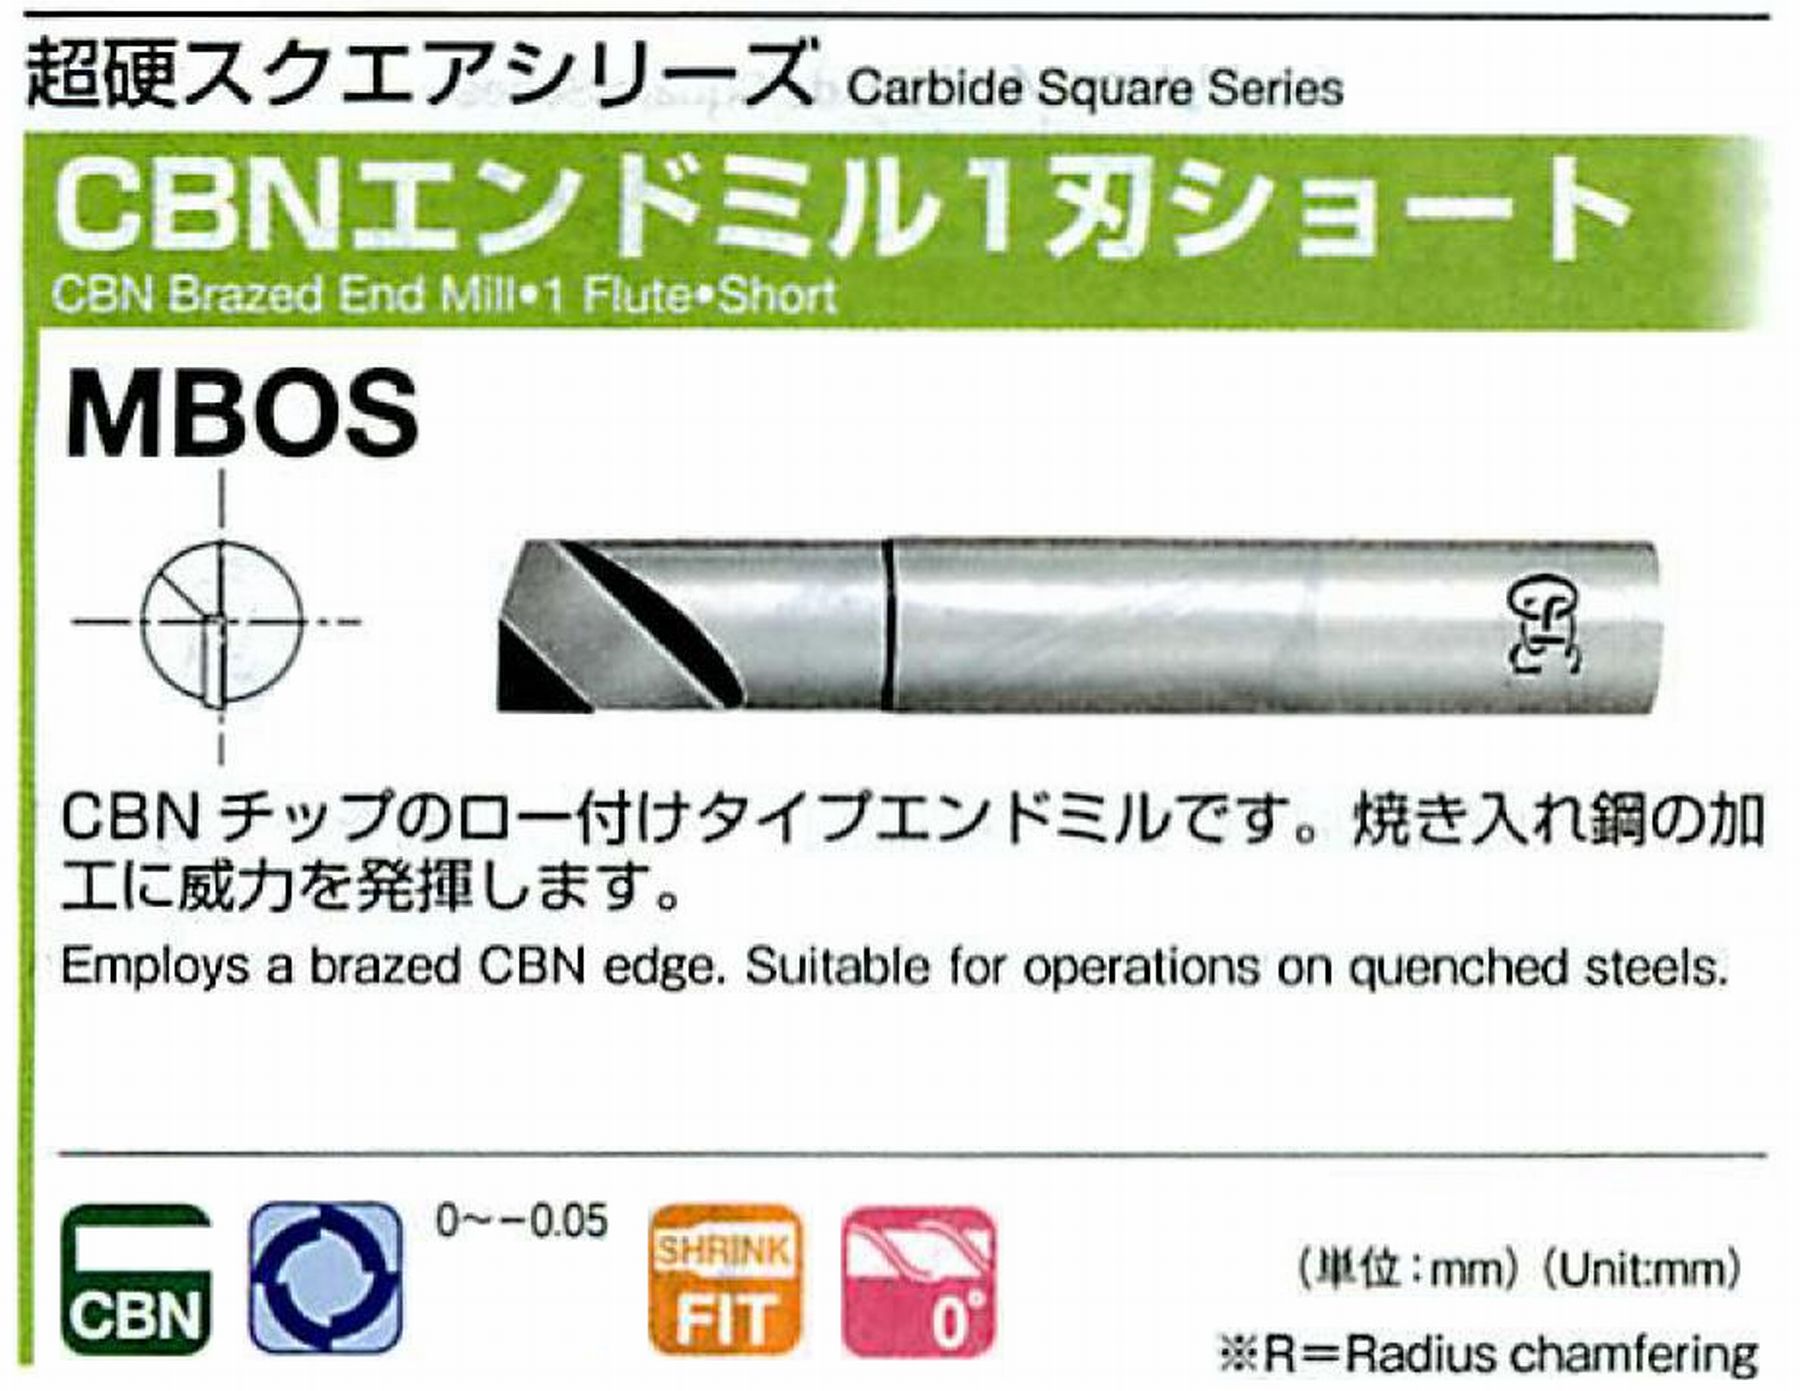 CBNエンドミル 1刃ショート MBOS(用途:プリハードン鋼、焼き入れ鋼、鋳鉄、ダクタイル鋳鉄) : 値打価格!, welcome to